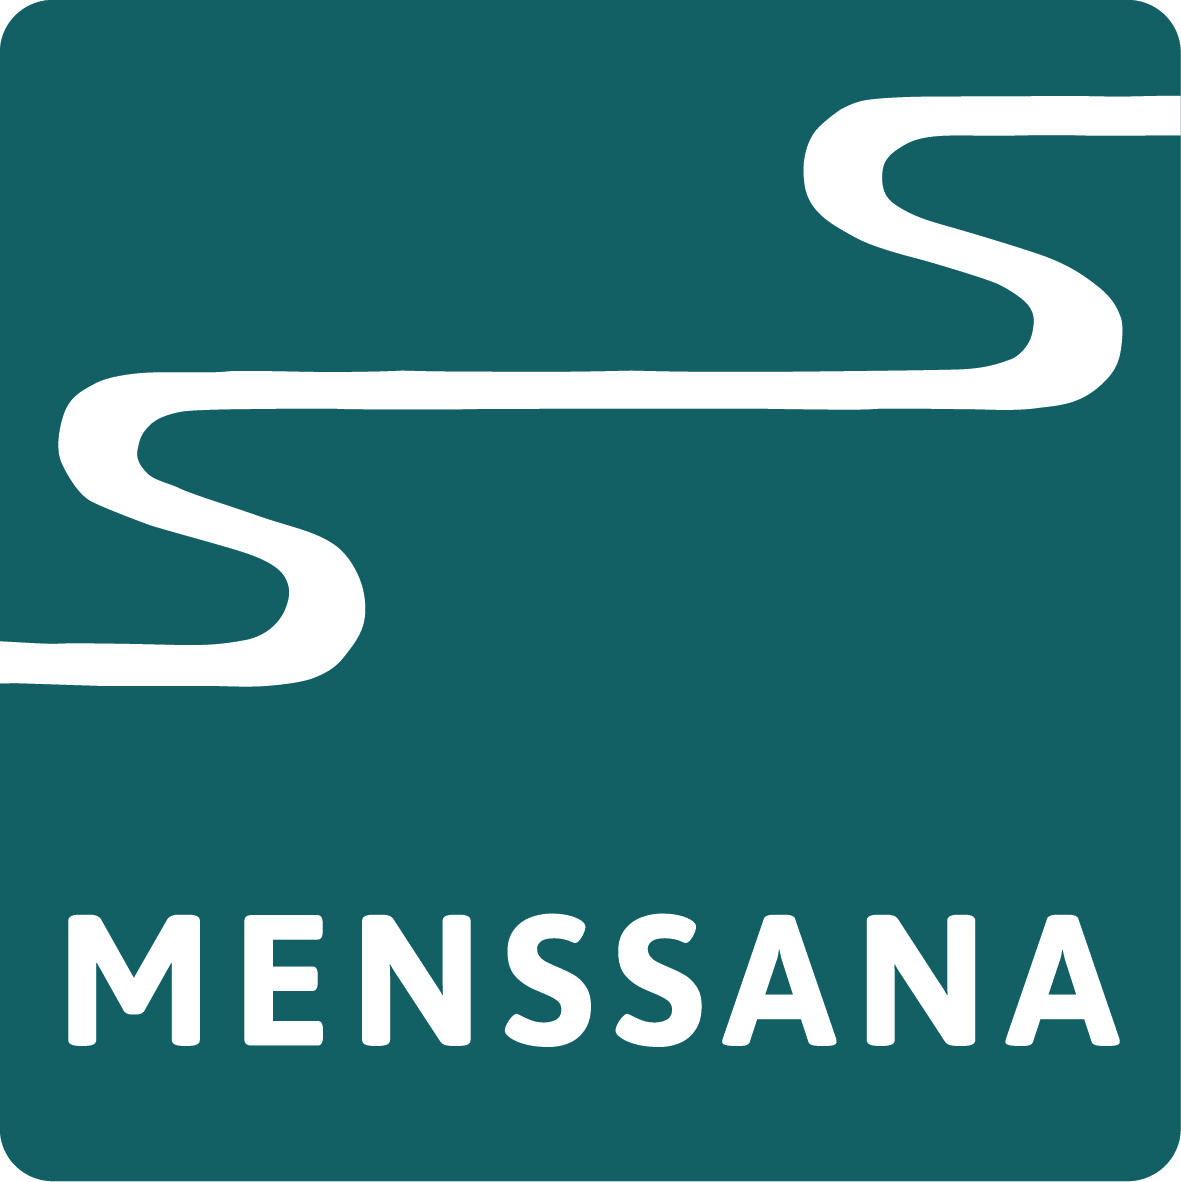 MENS SANA logo